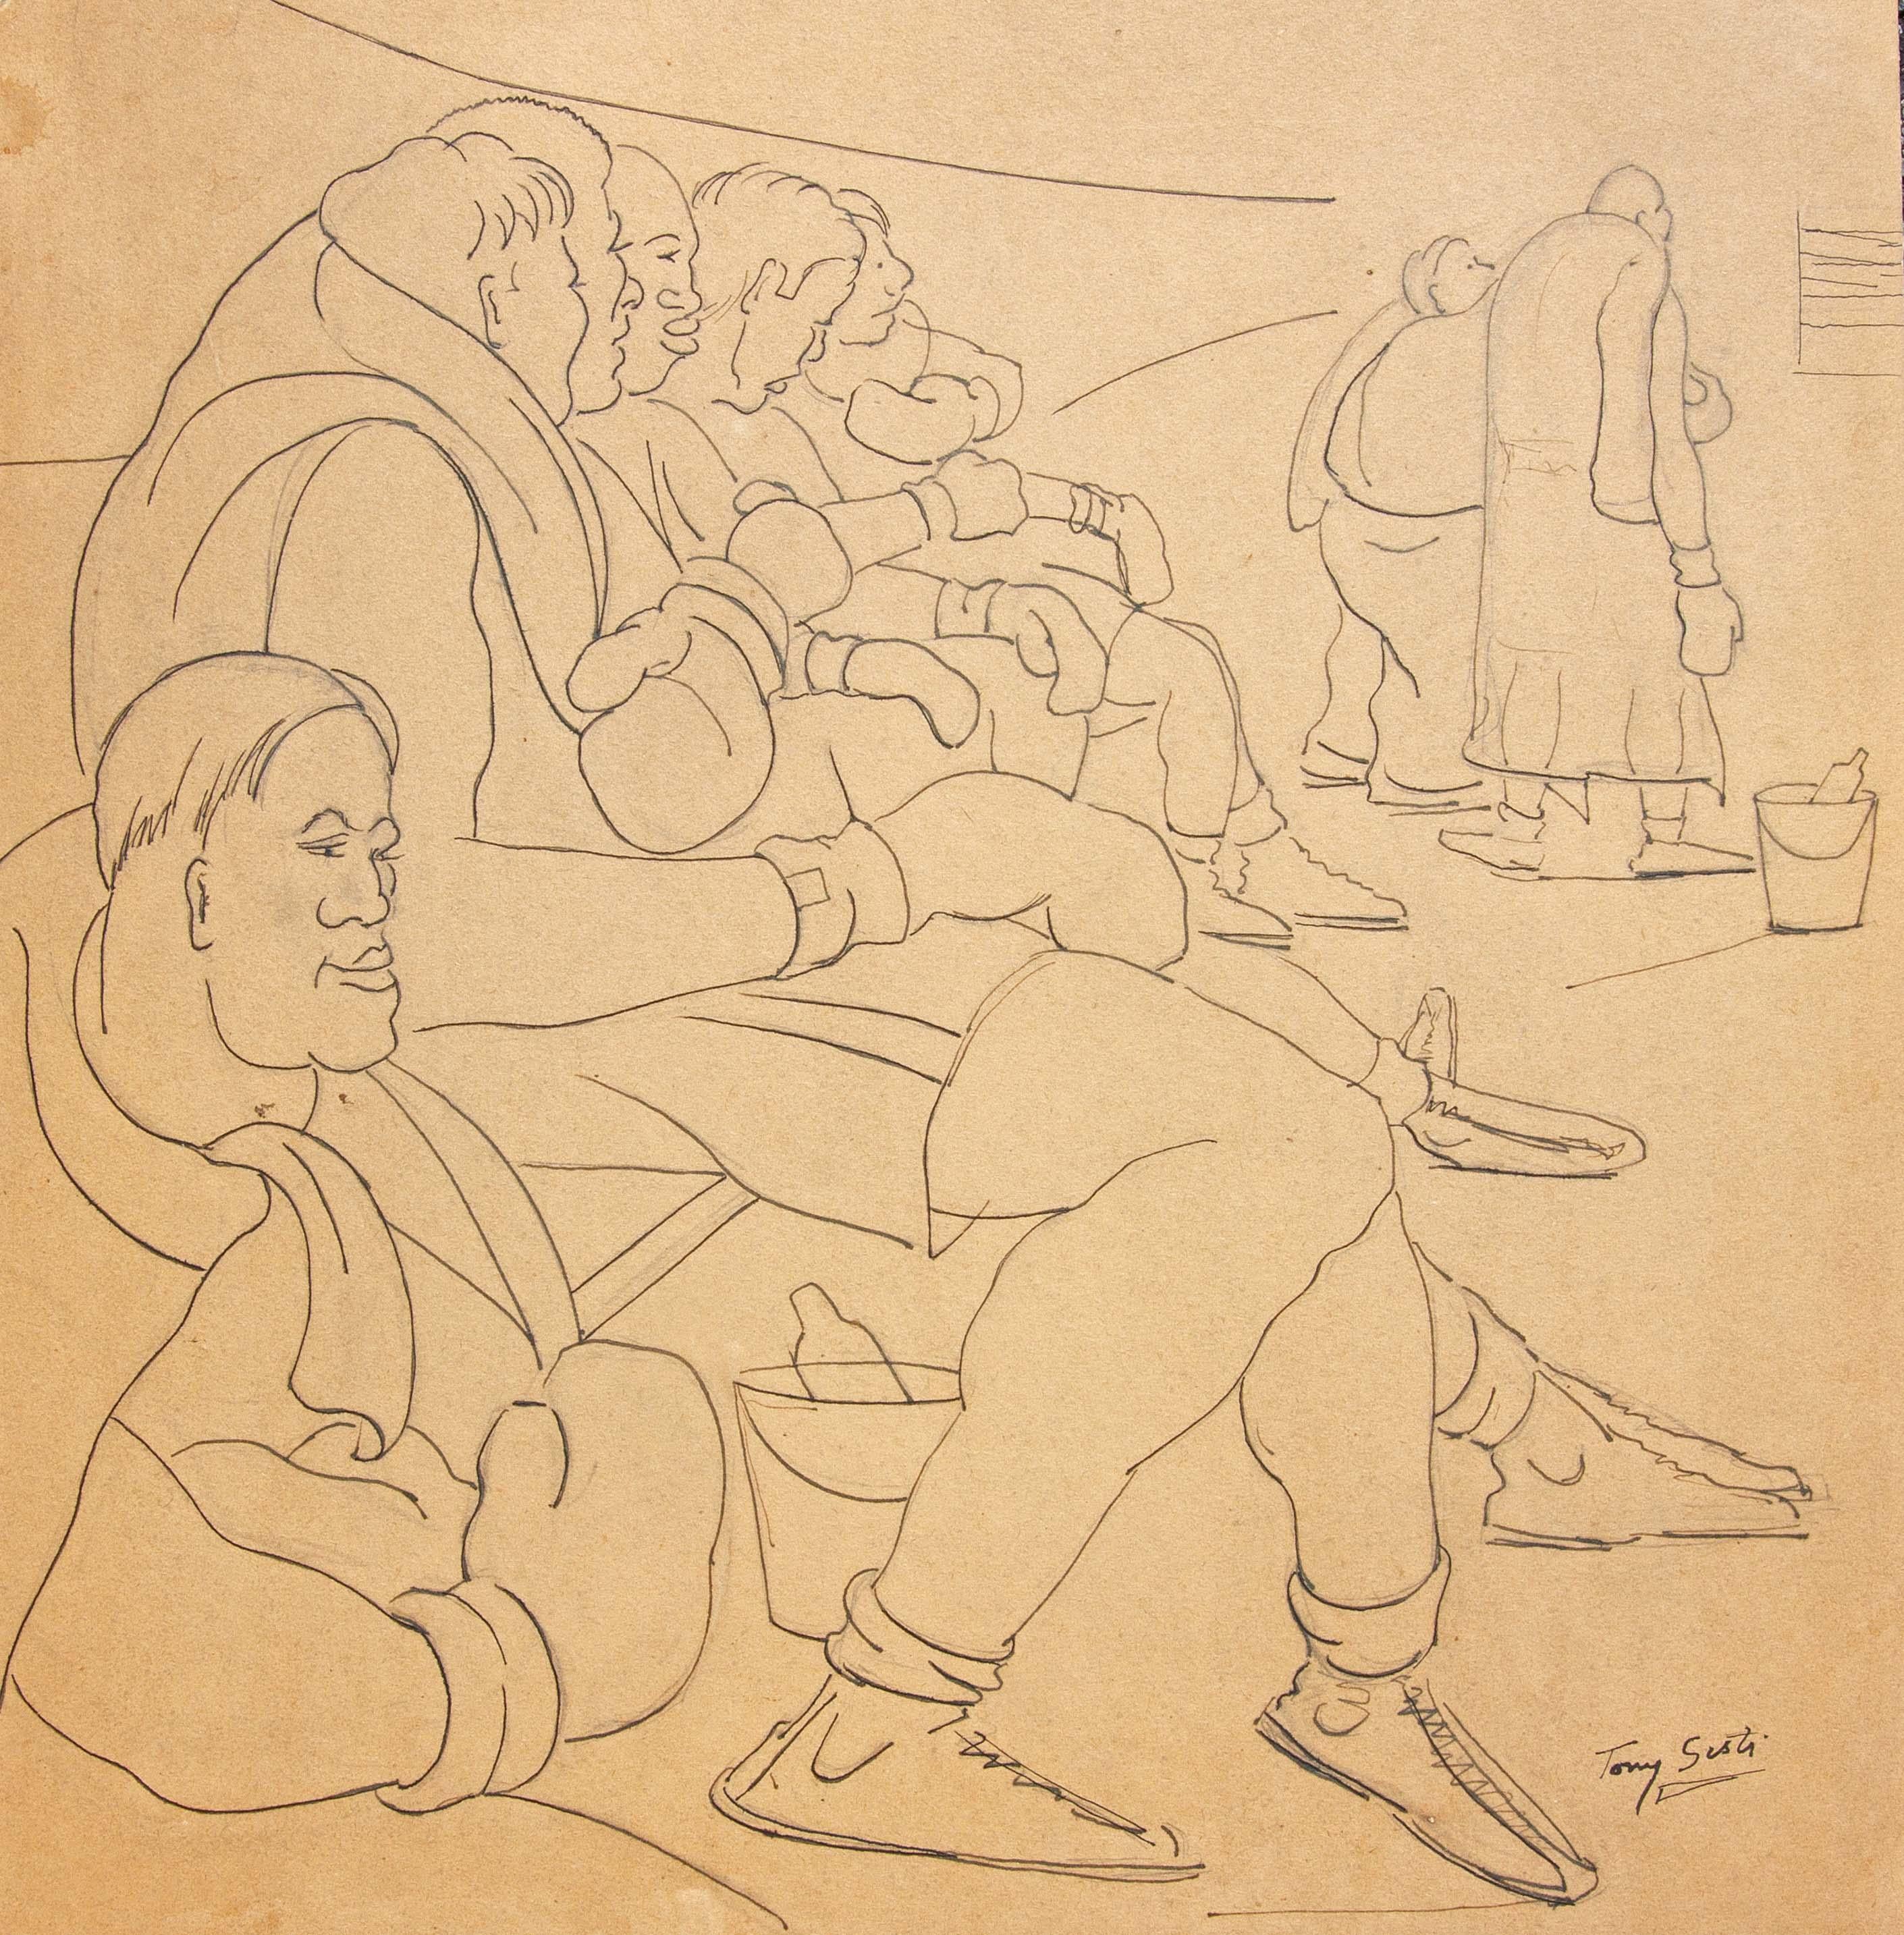 Drei Zeichnungen von Boxern von Tony Sisti. Sisti war ein Meister des Zeichnens. Mit nur wenigen Zeilen fängt er den Moment ein. Sisti war Profiboxer und ein begabter Künstler. Er war in der Lage, das Thema aus dem Blickwinkel des Boxers und des